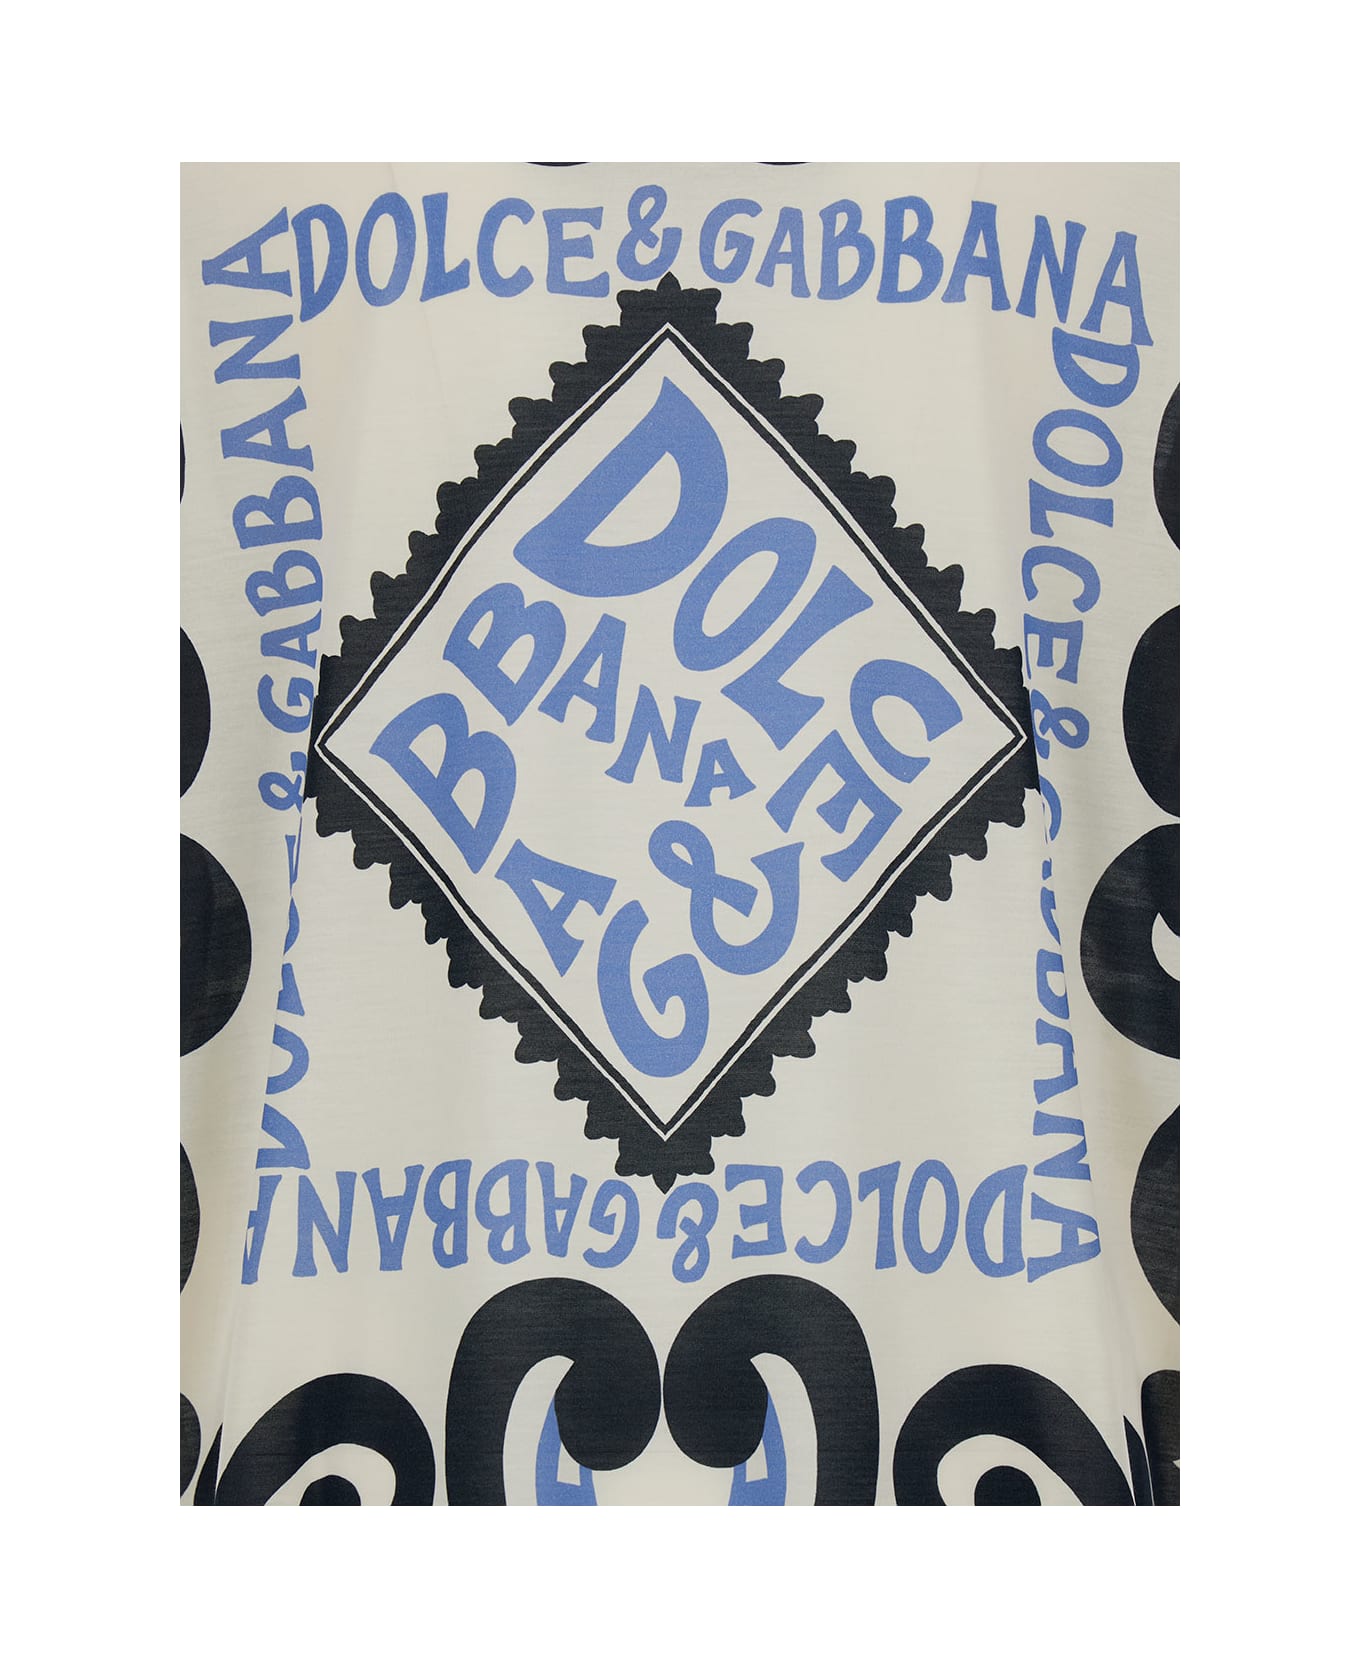 Dolce & Gabbana Crewneck T-shirt With Marina Print In Silk Man - White